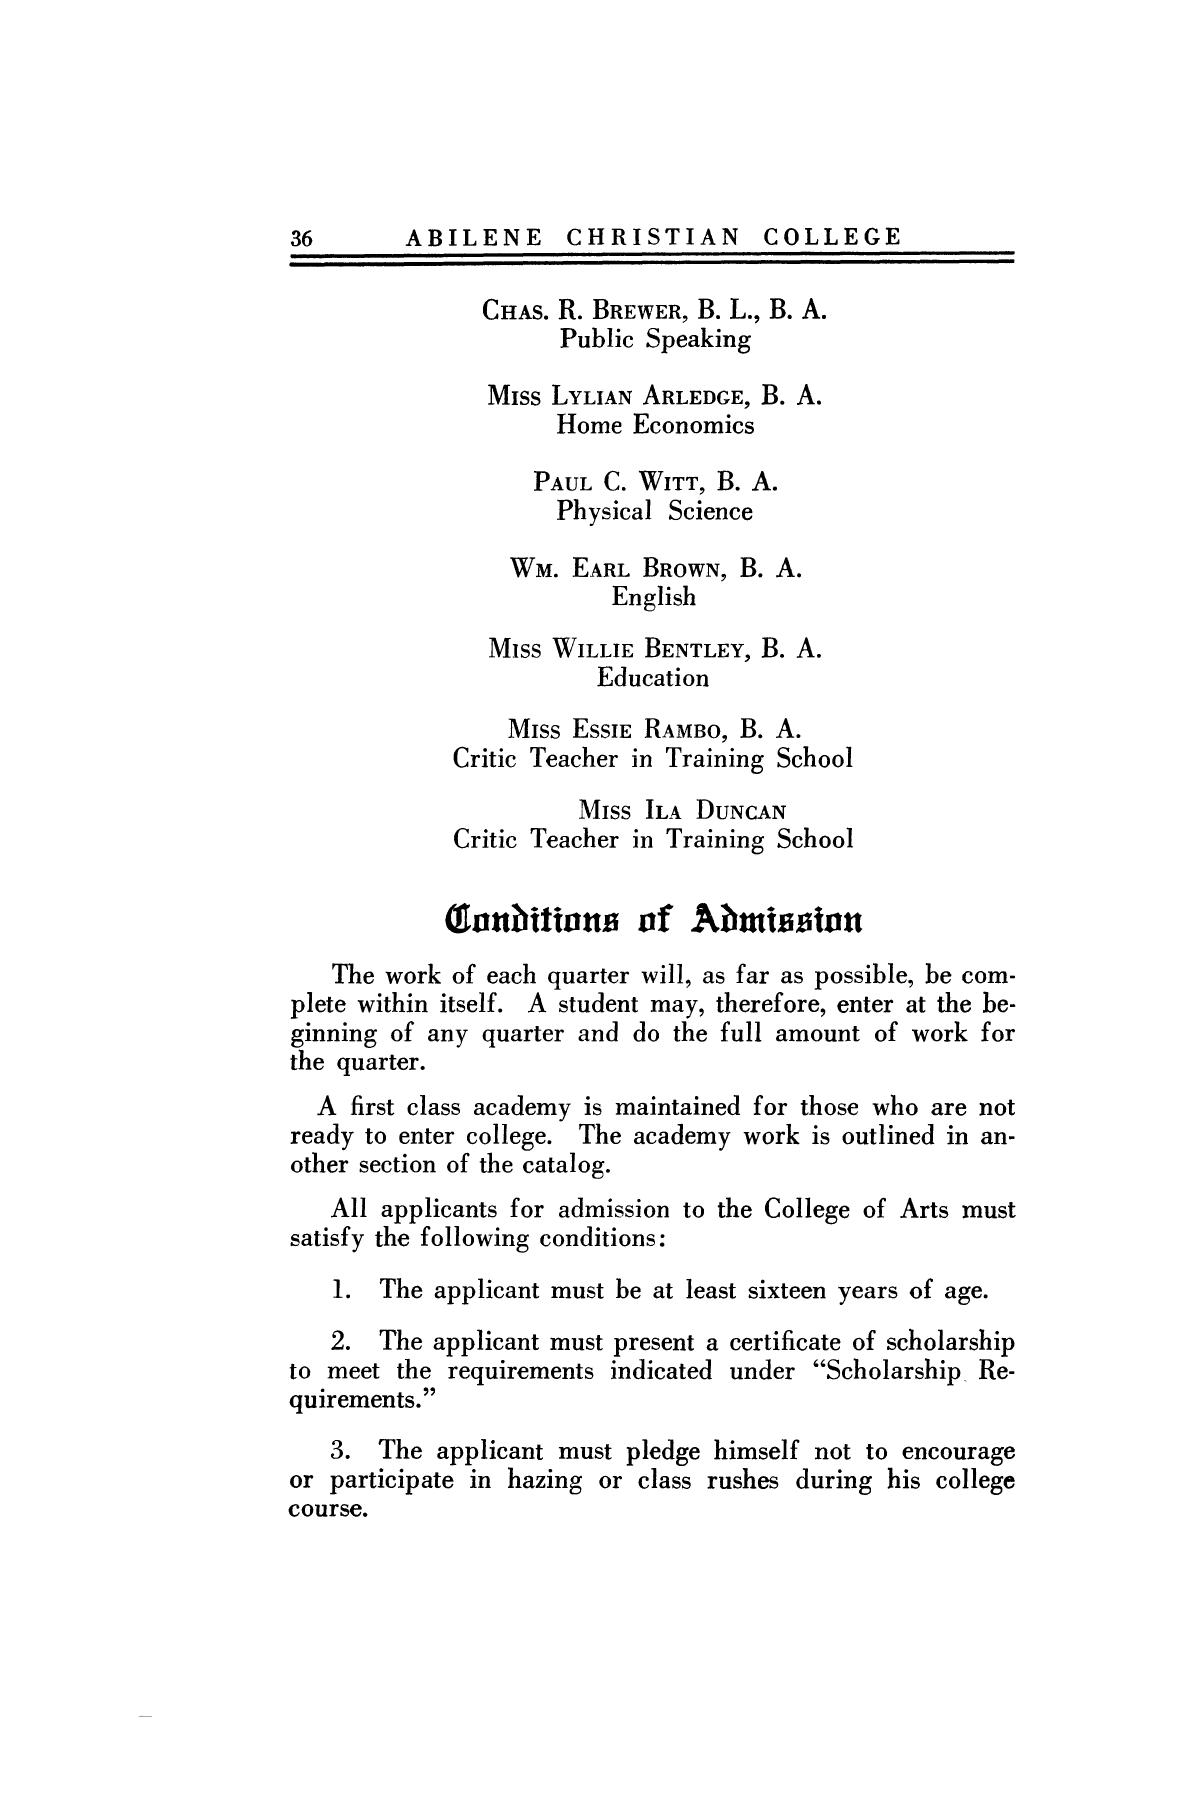 Catalog of Abilene Christian College, 1923-1924
                                                
                                                    36
                                                